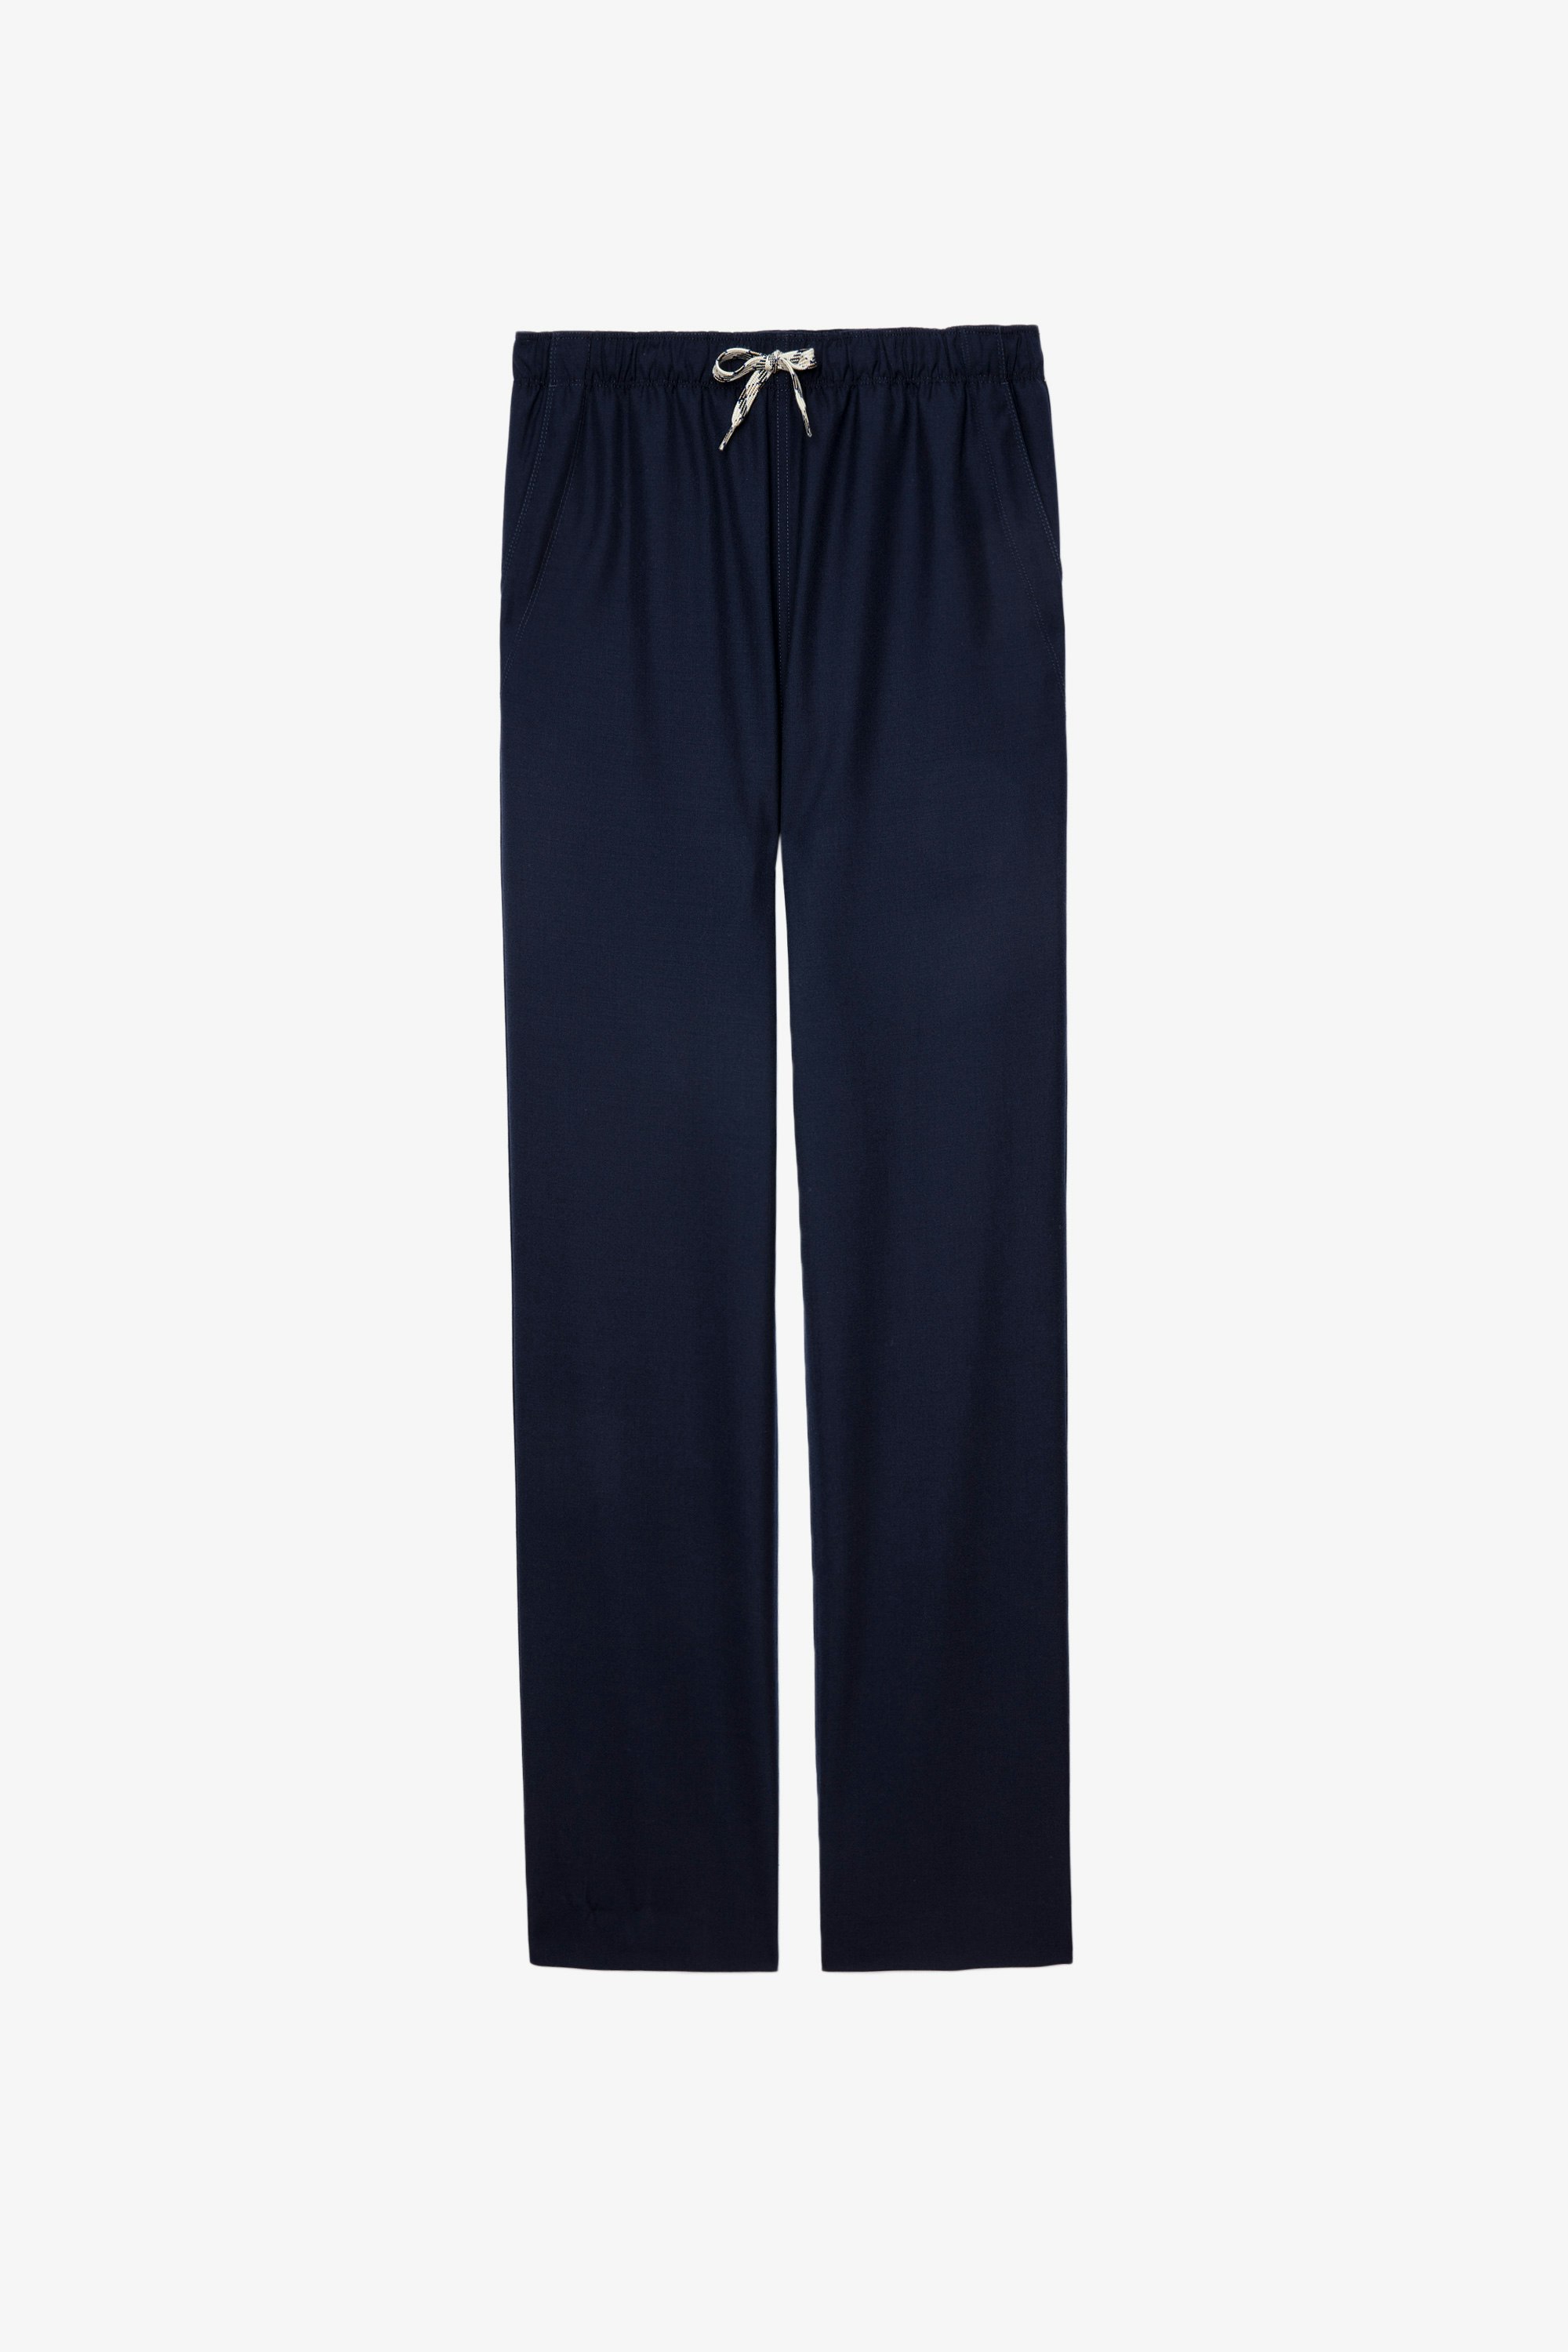 Pixel パンツ Men’s navy blue wool trousers 